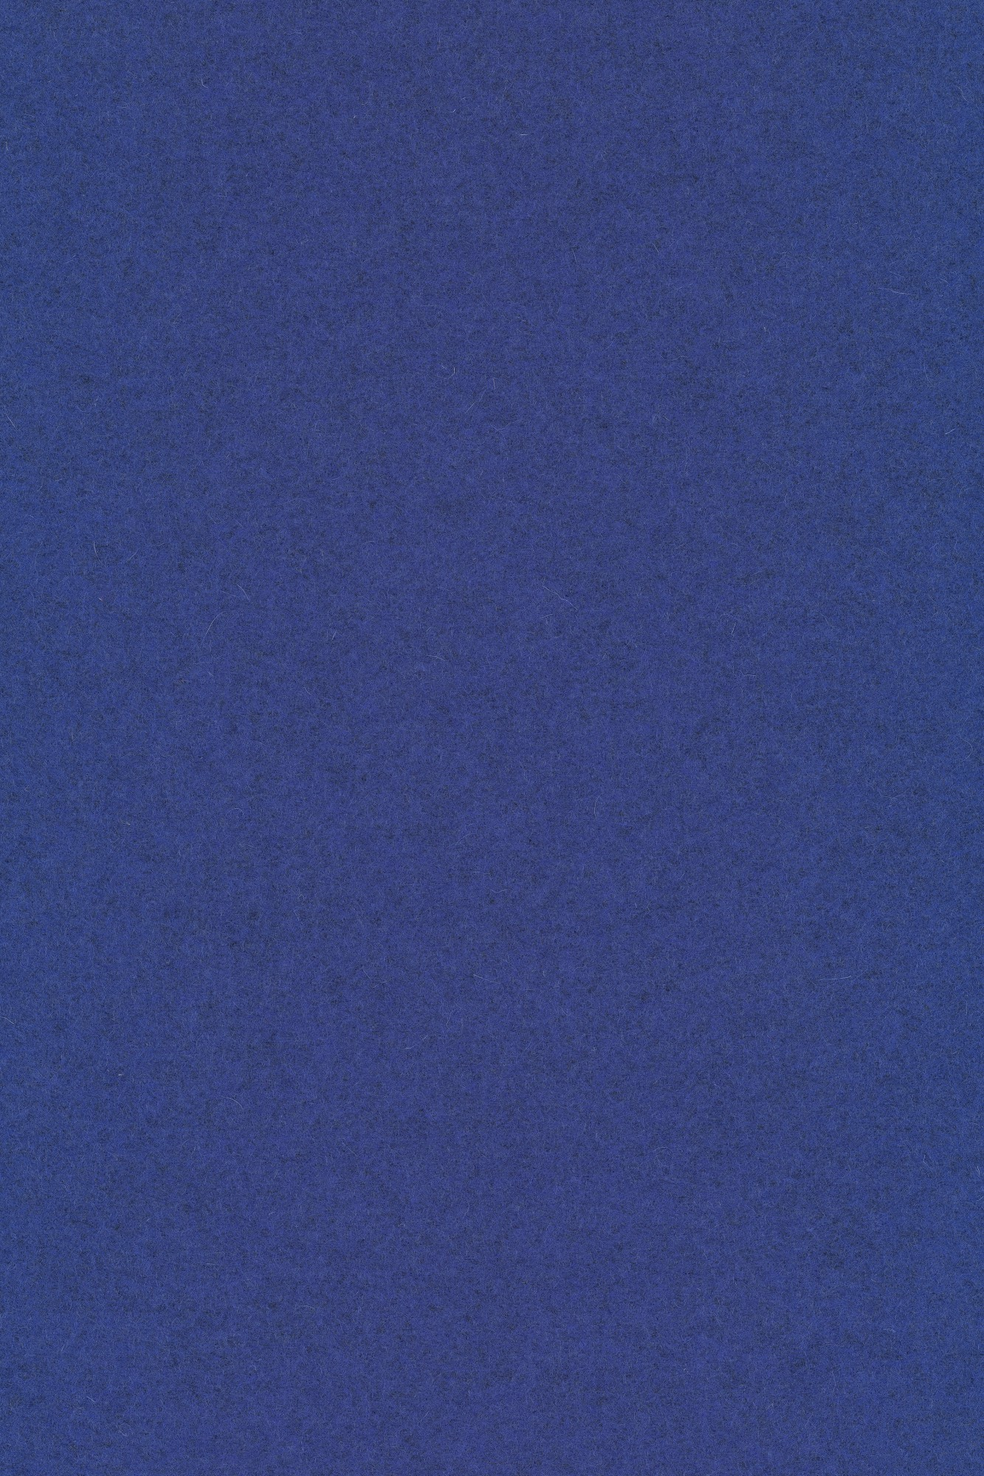 Fabric sample Divina Melange 3 747 blue